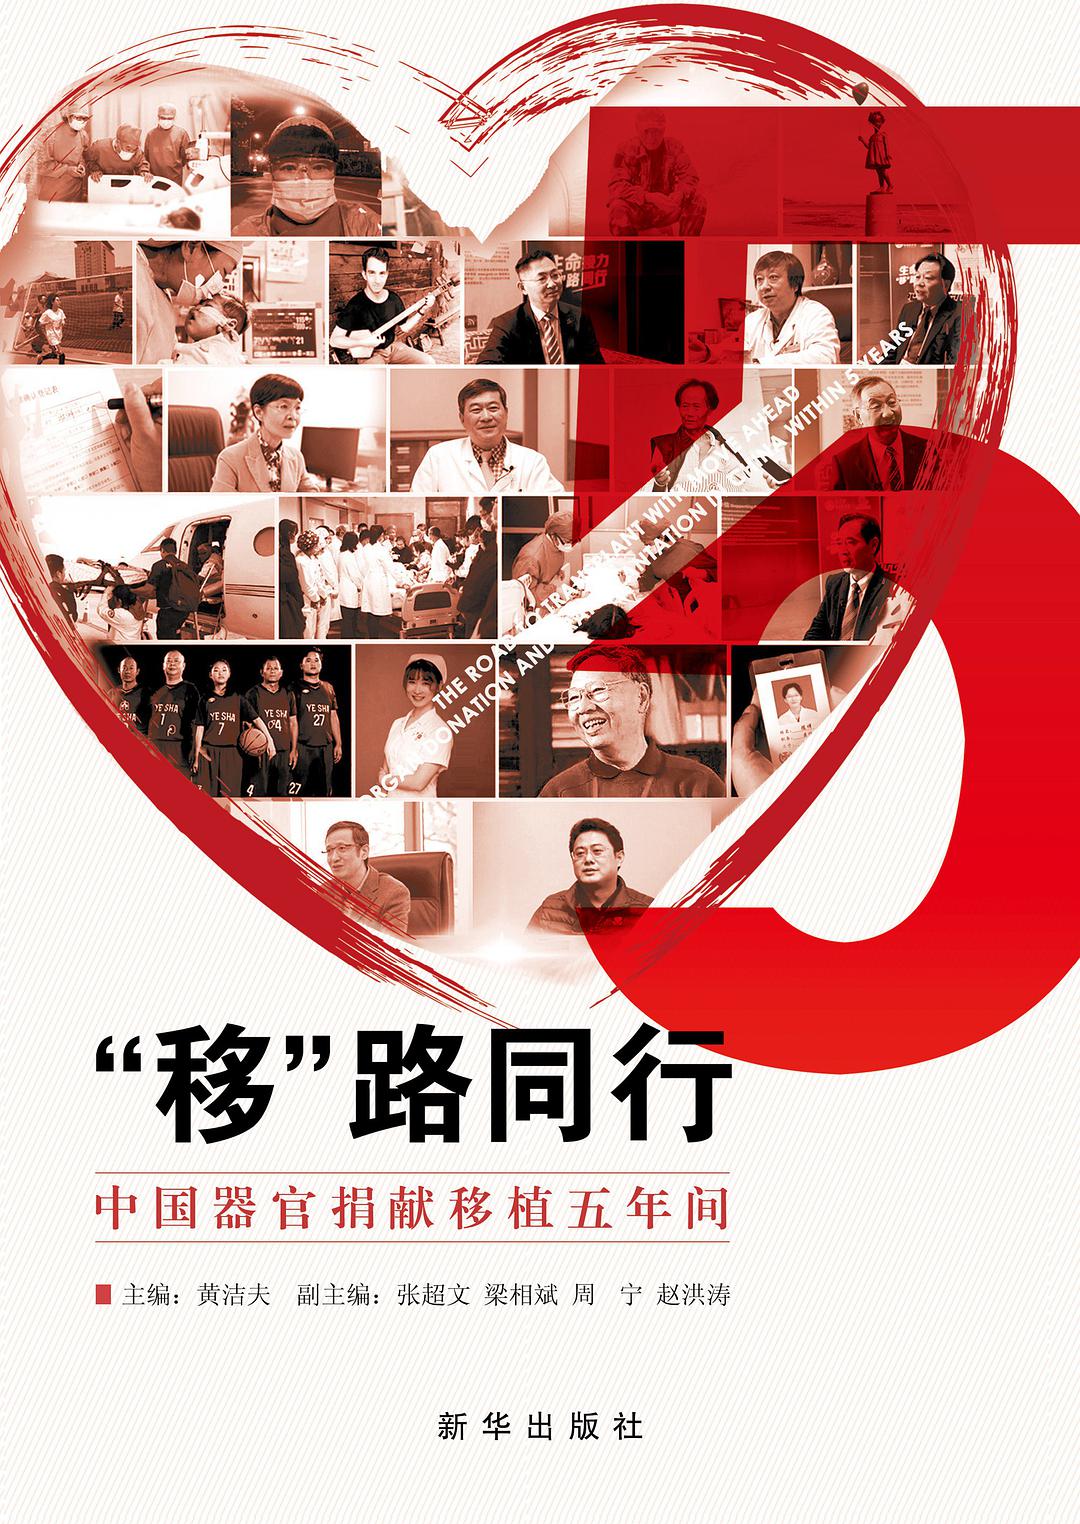 “移”路同行 中国器官捐献移植五年间 organ donation and transplantation in China within 5 years